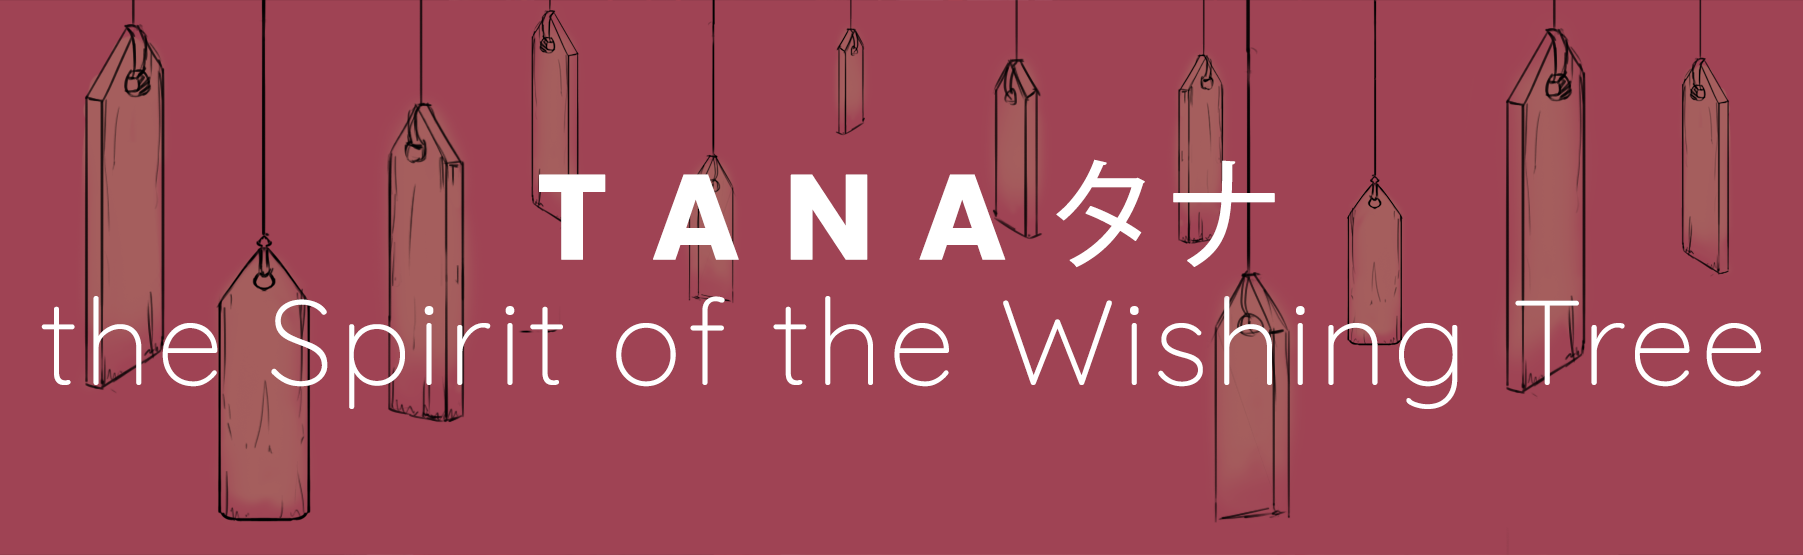 Tana the Spirit of the Wishing Tree